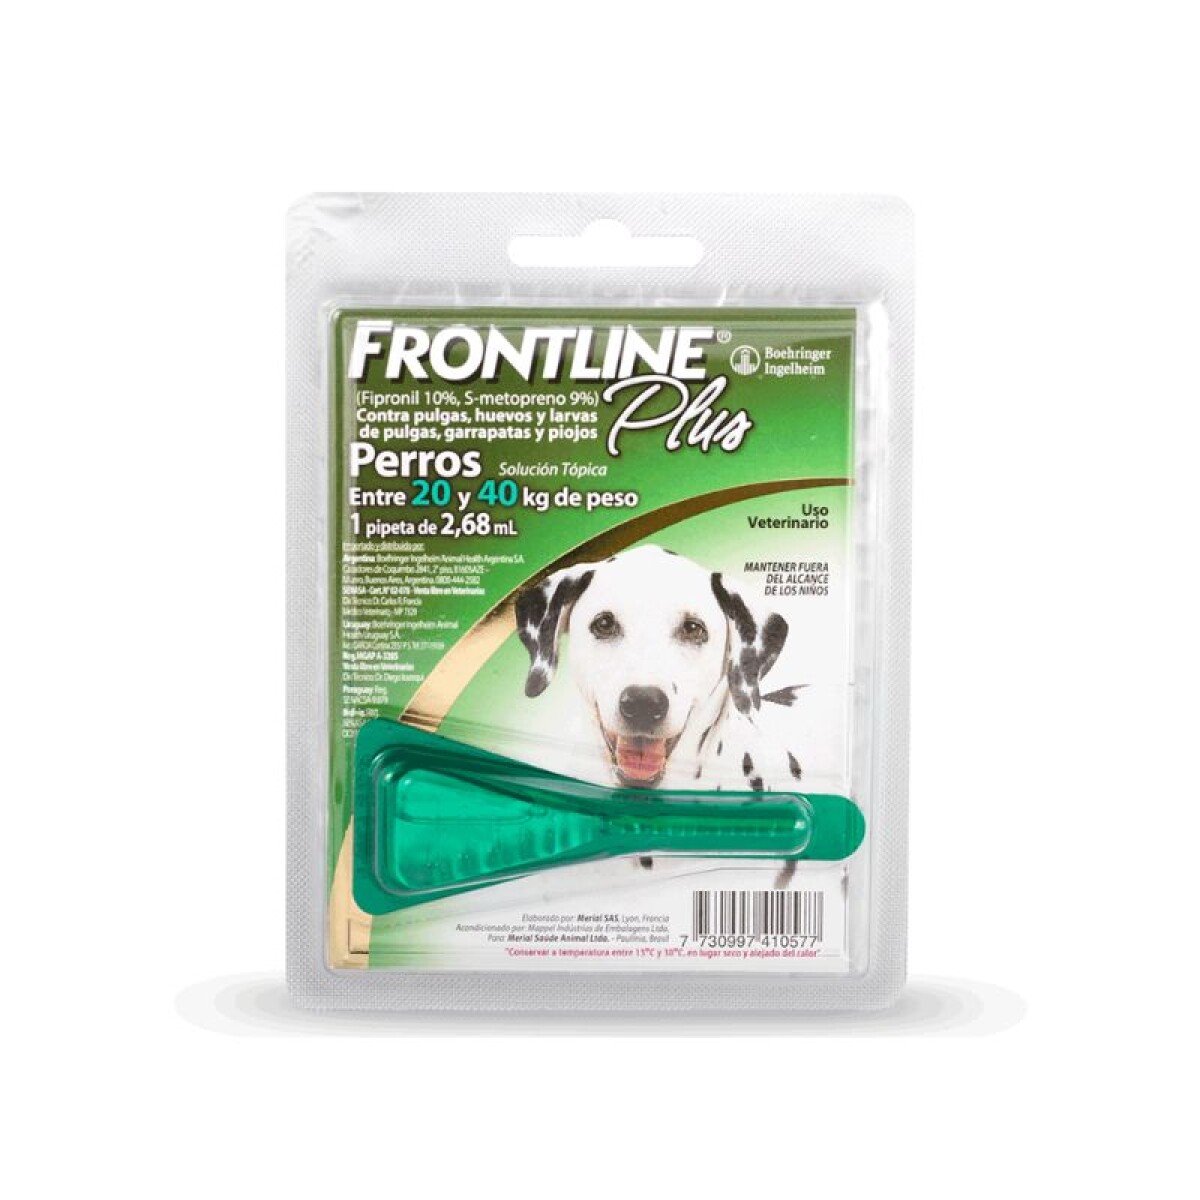 FRONTLINE PLUS PERROS 20-40 KG - Frontline Plus Perros 20-40 Kg 